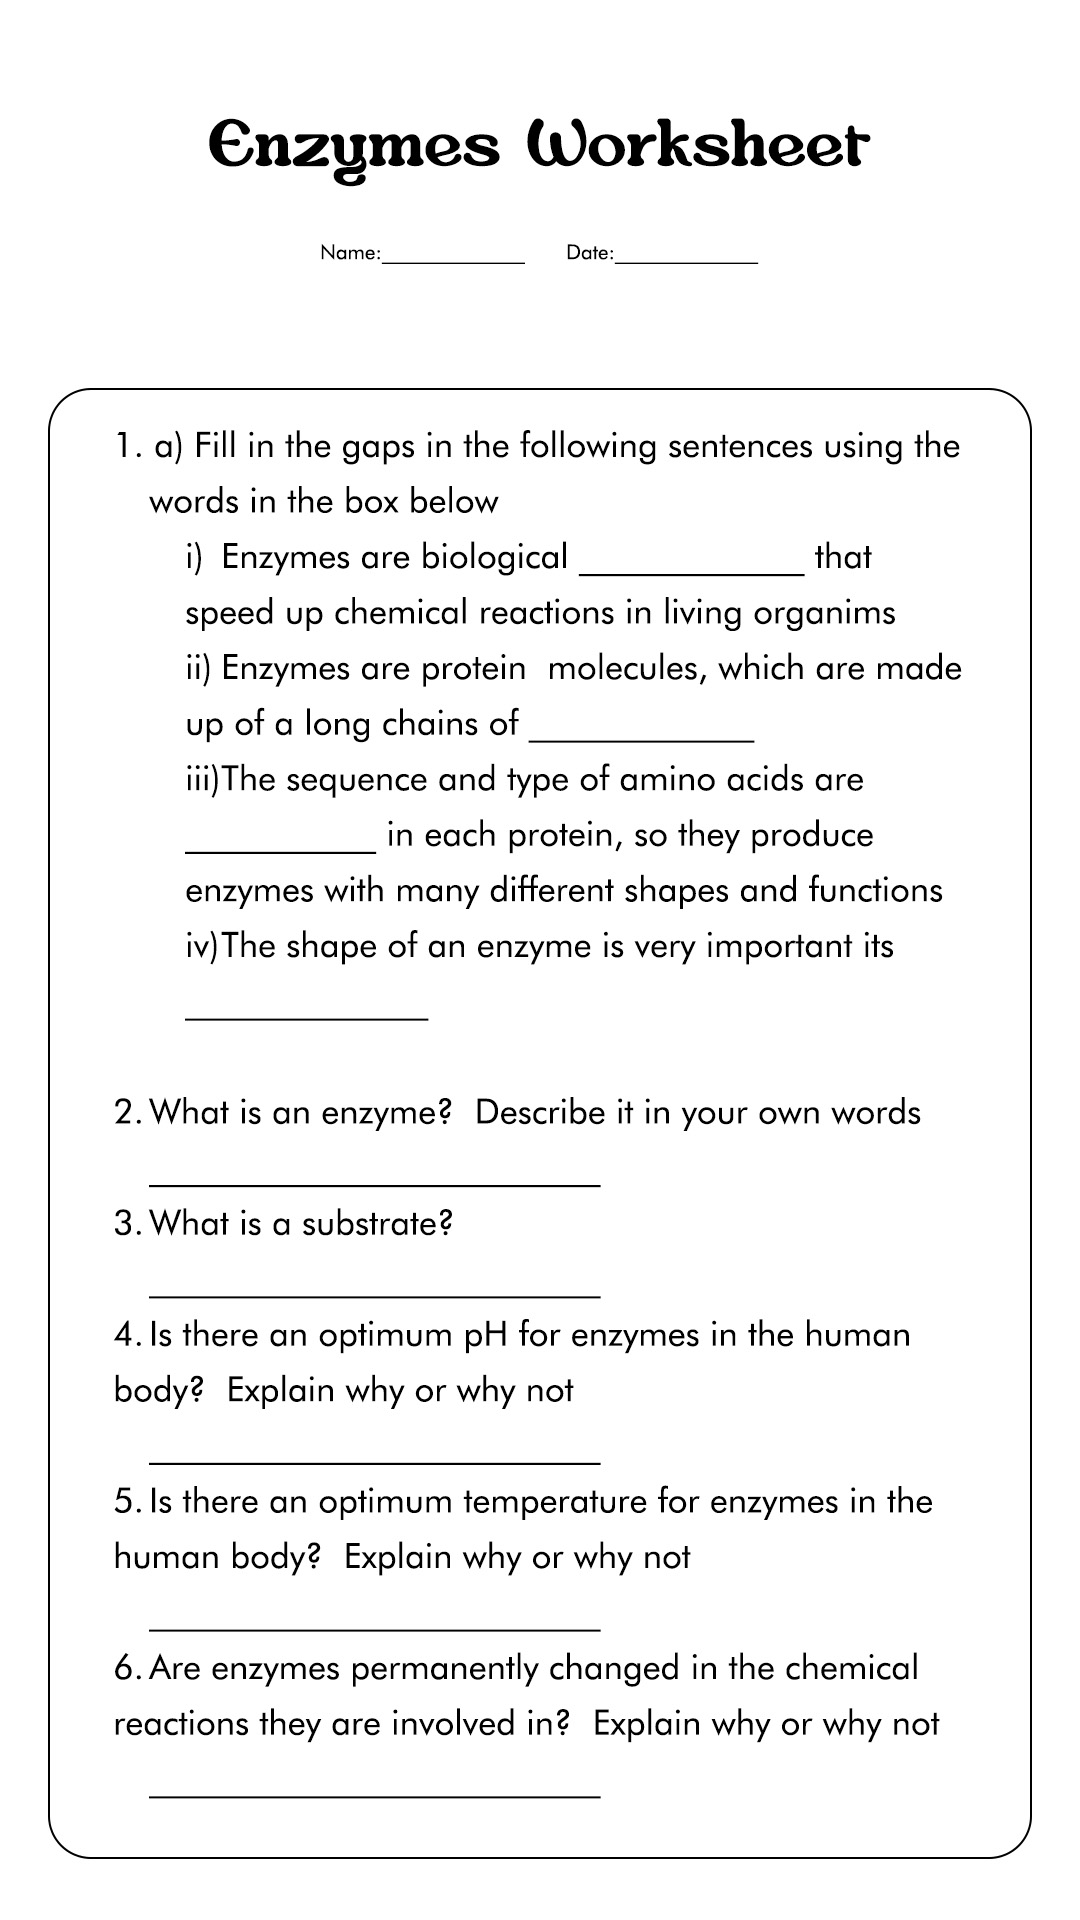 Biology Enzyme Worksheet High School Image